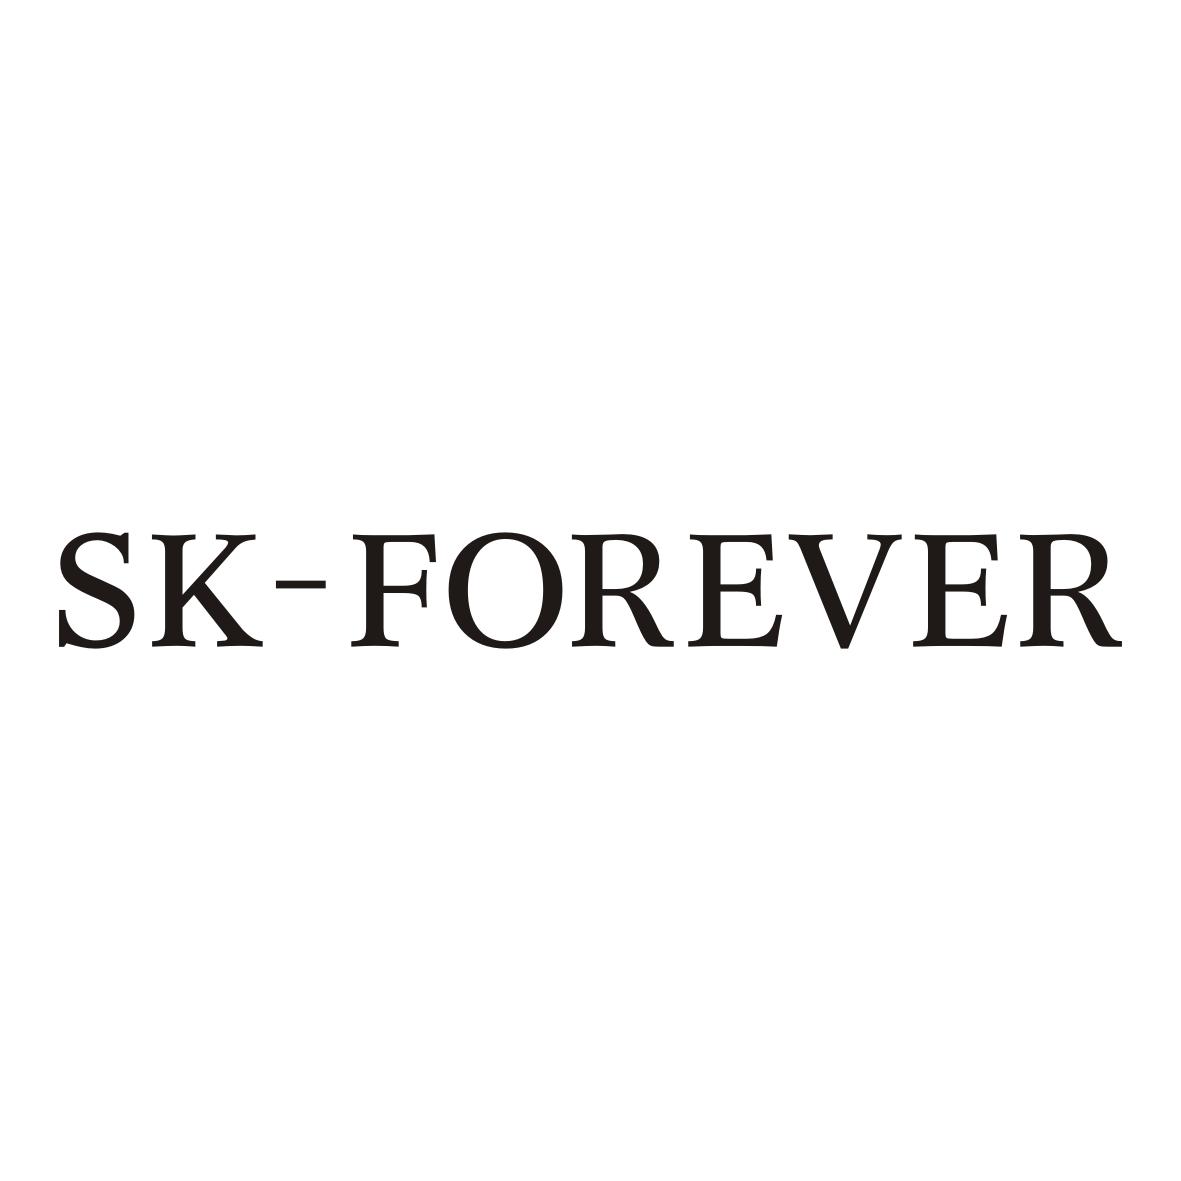 SK-FOREVER